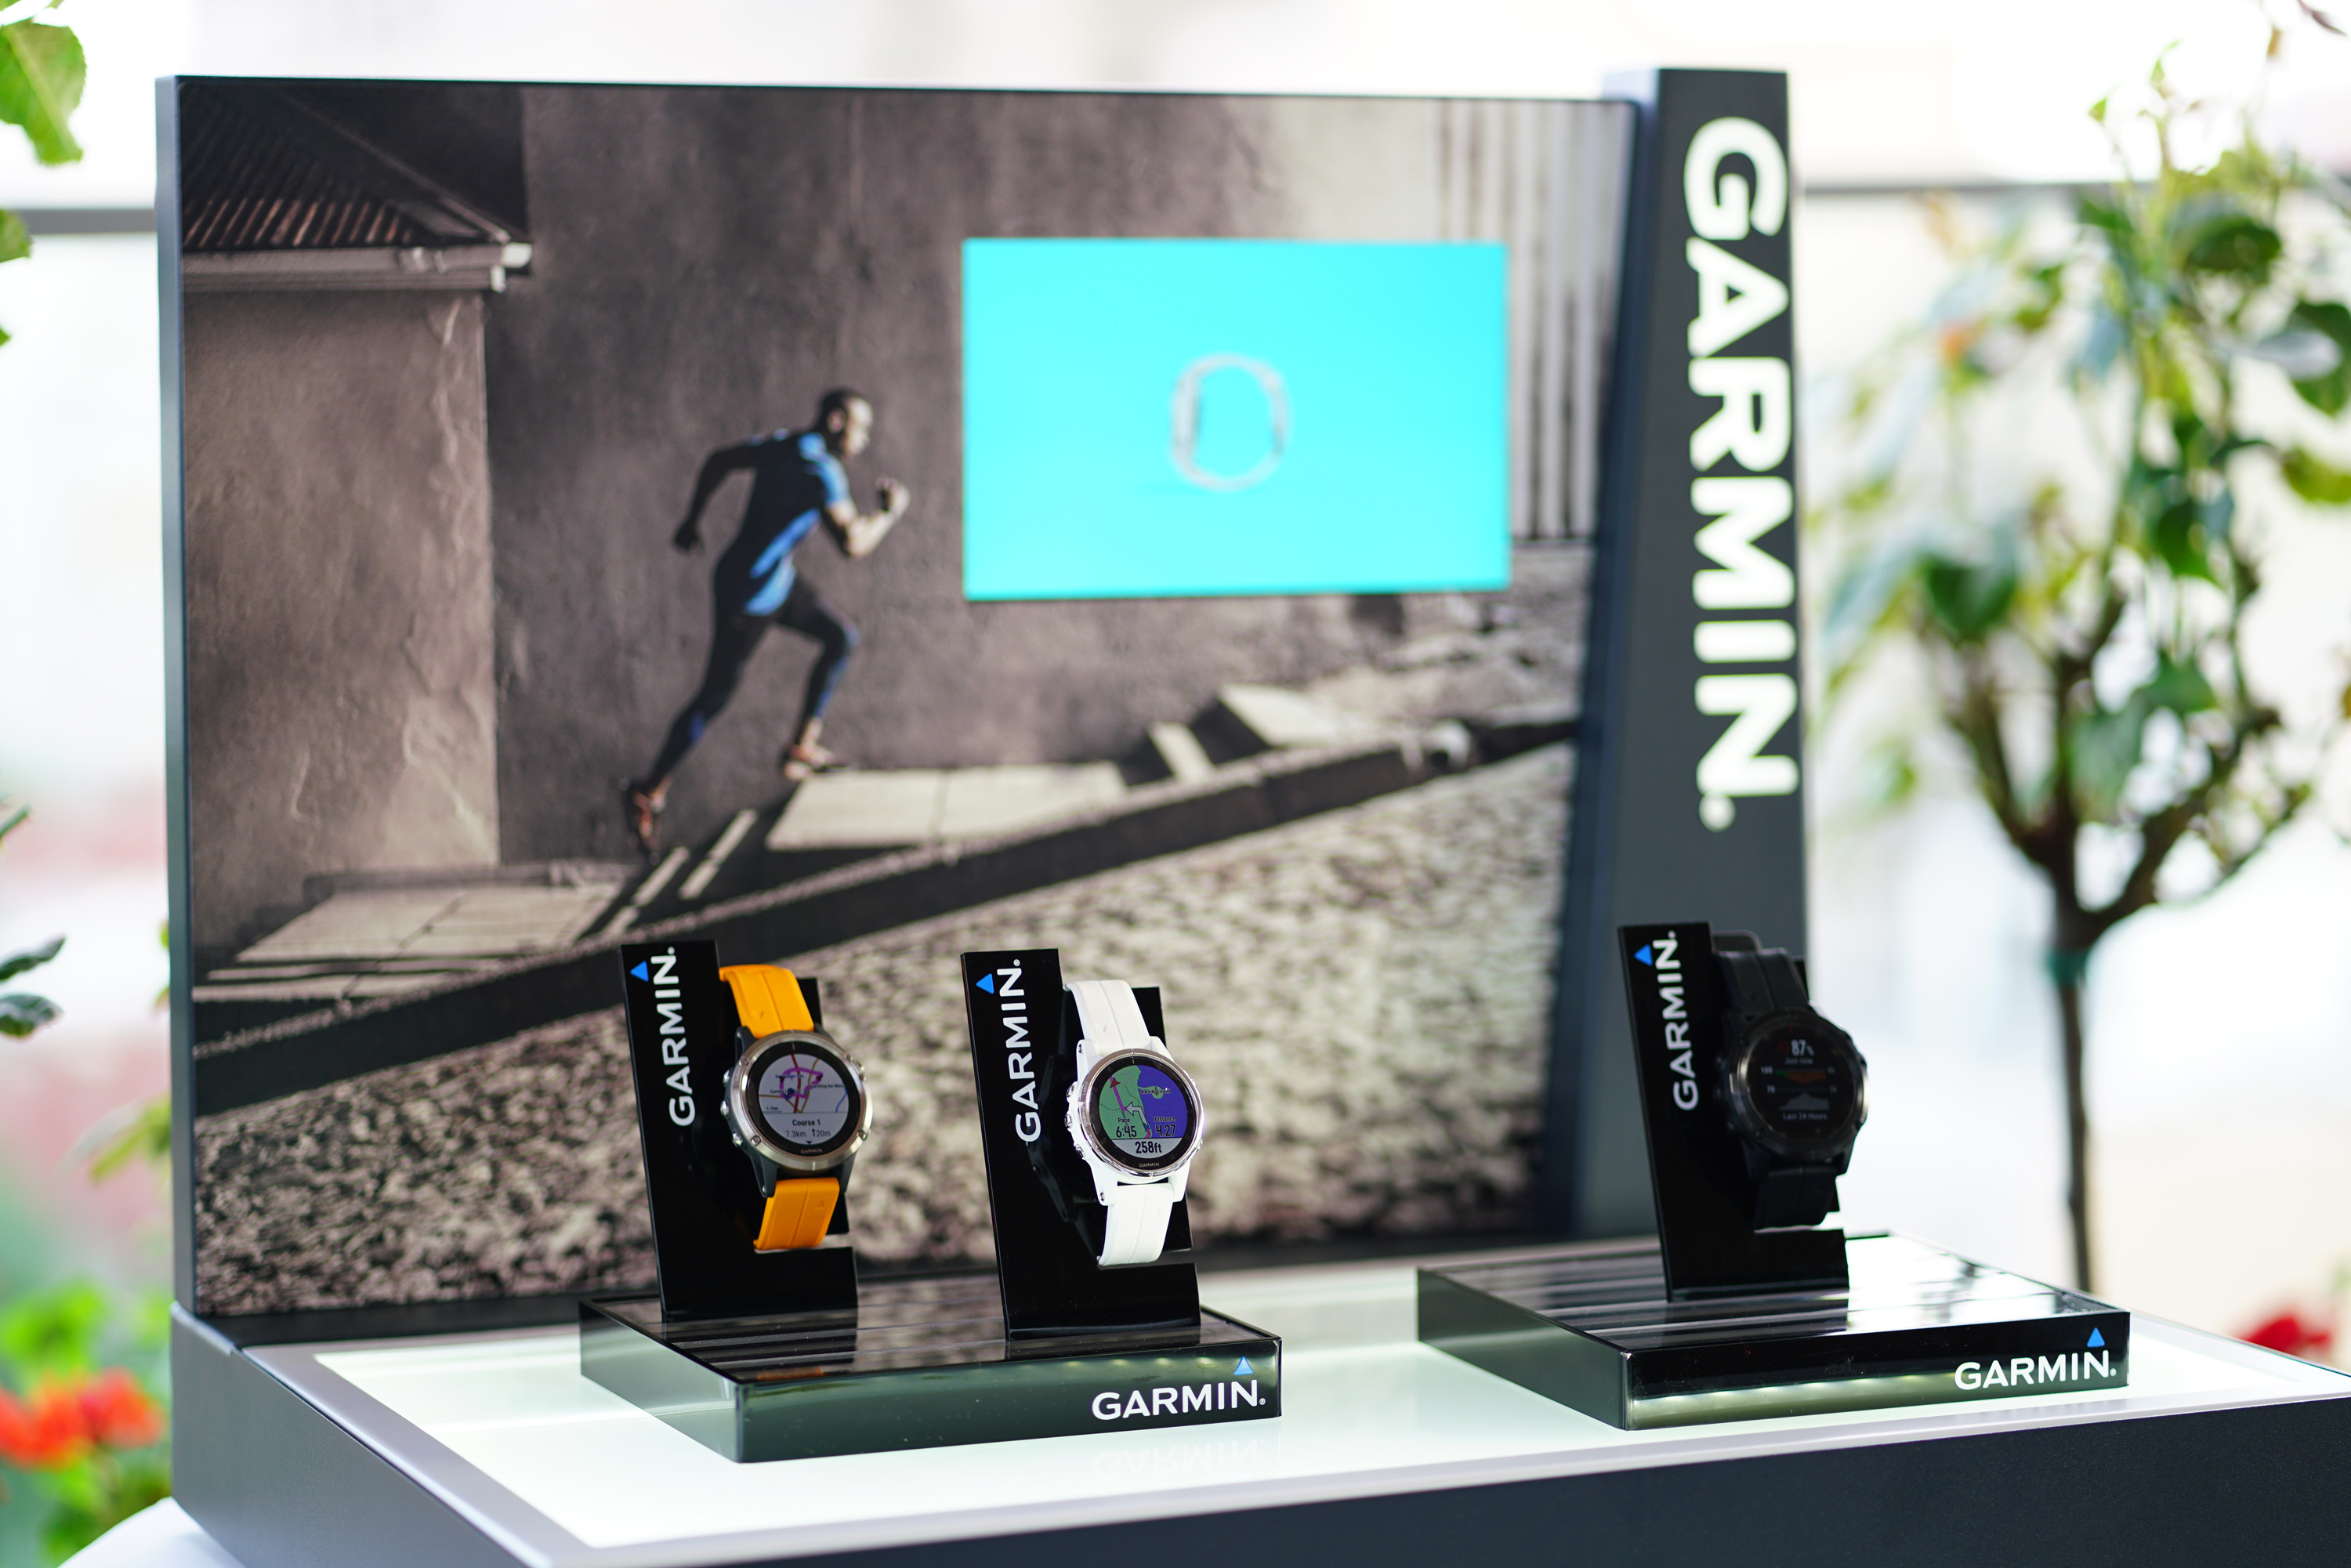 Garmin lansează seria fēnix® 5 Plus  – ceasul multisport cu hărți integrate, funcțiile Music, Pay și Pulse Ox –